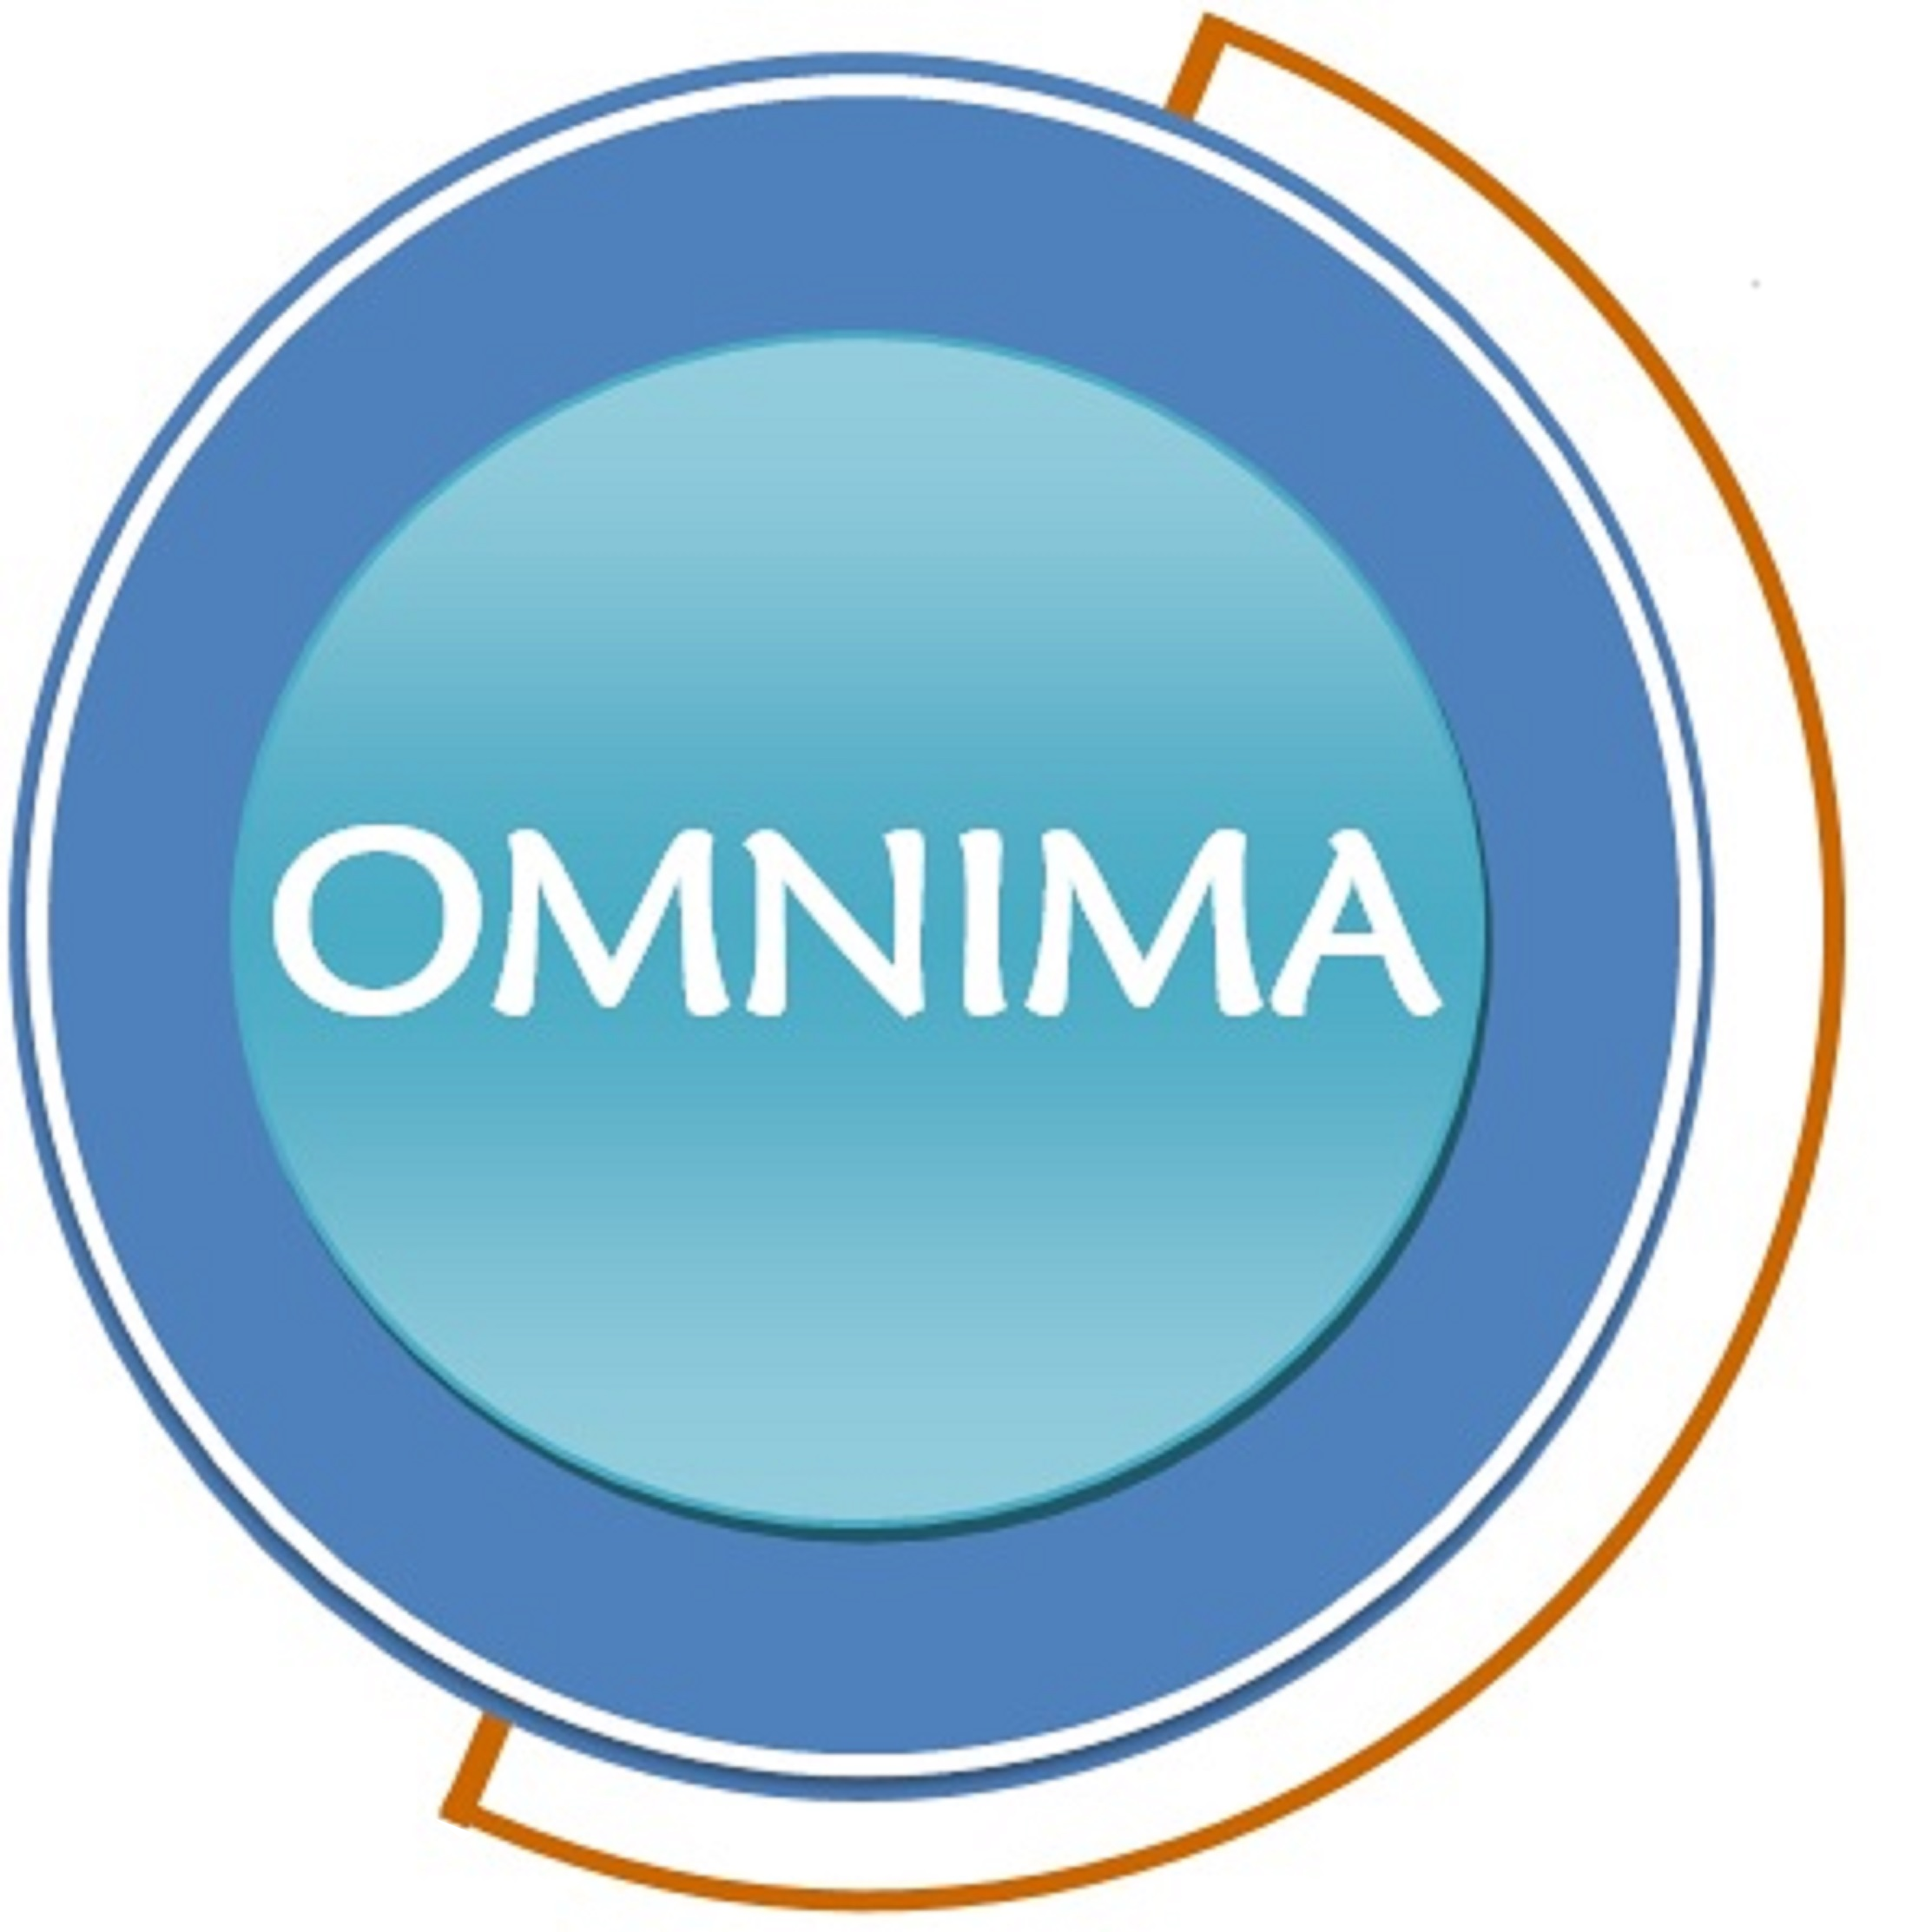 OMNIMA logo